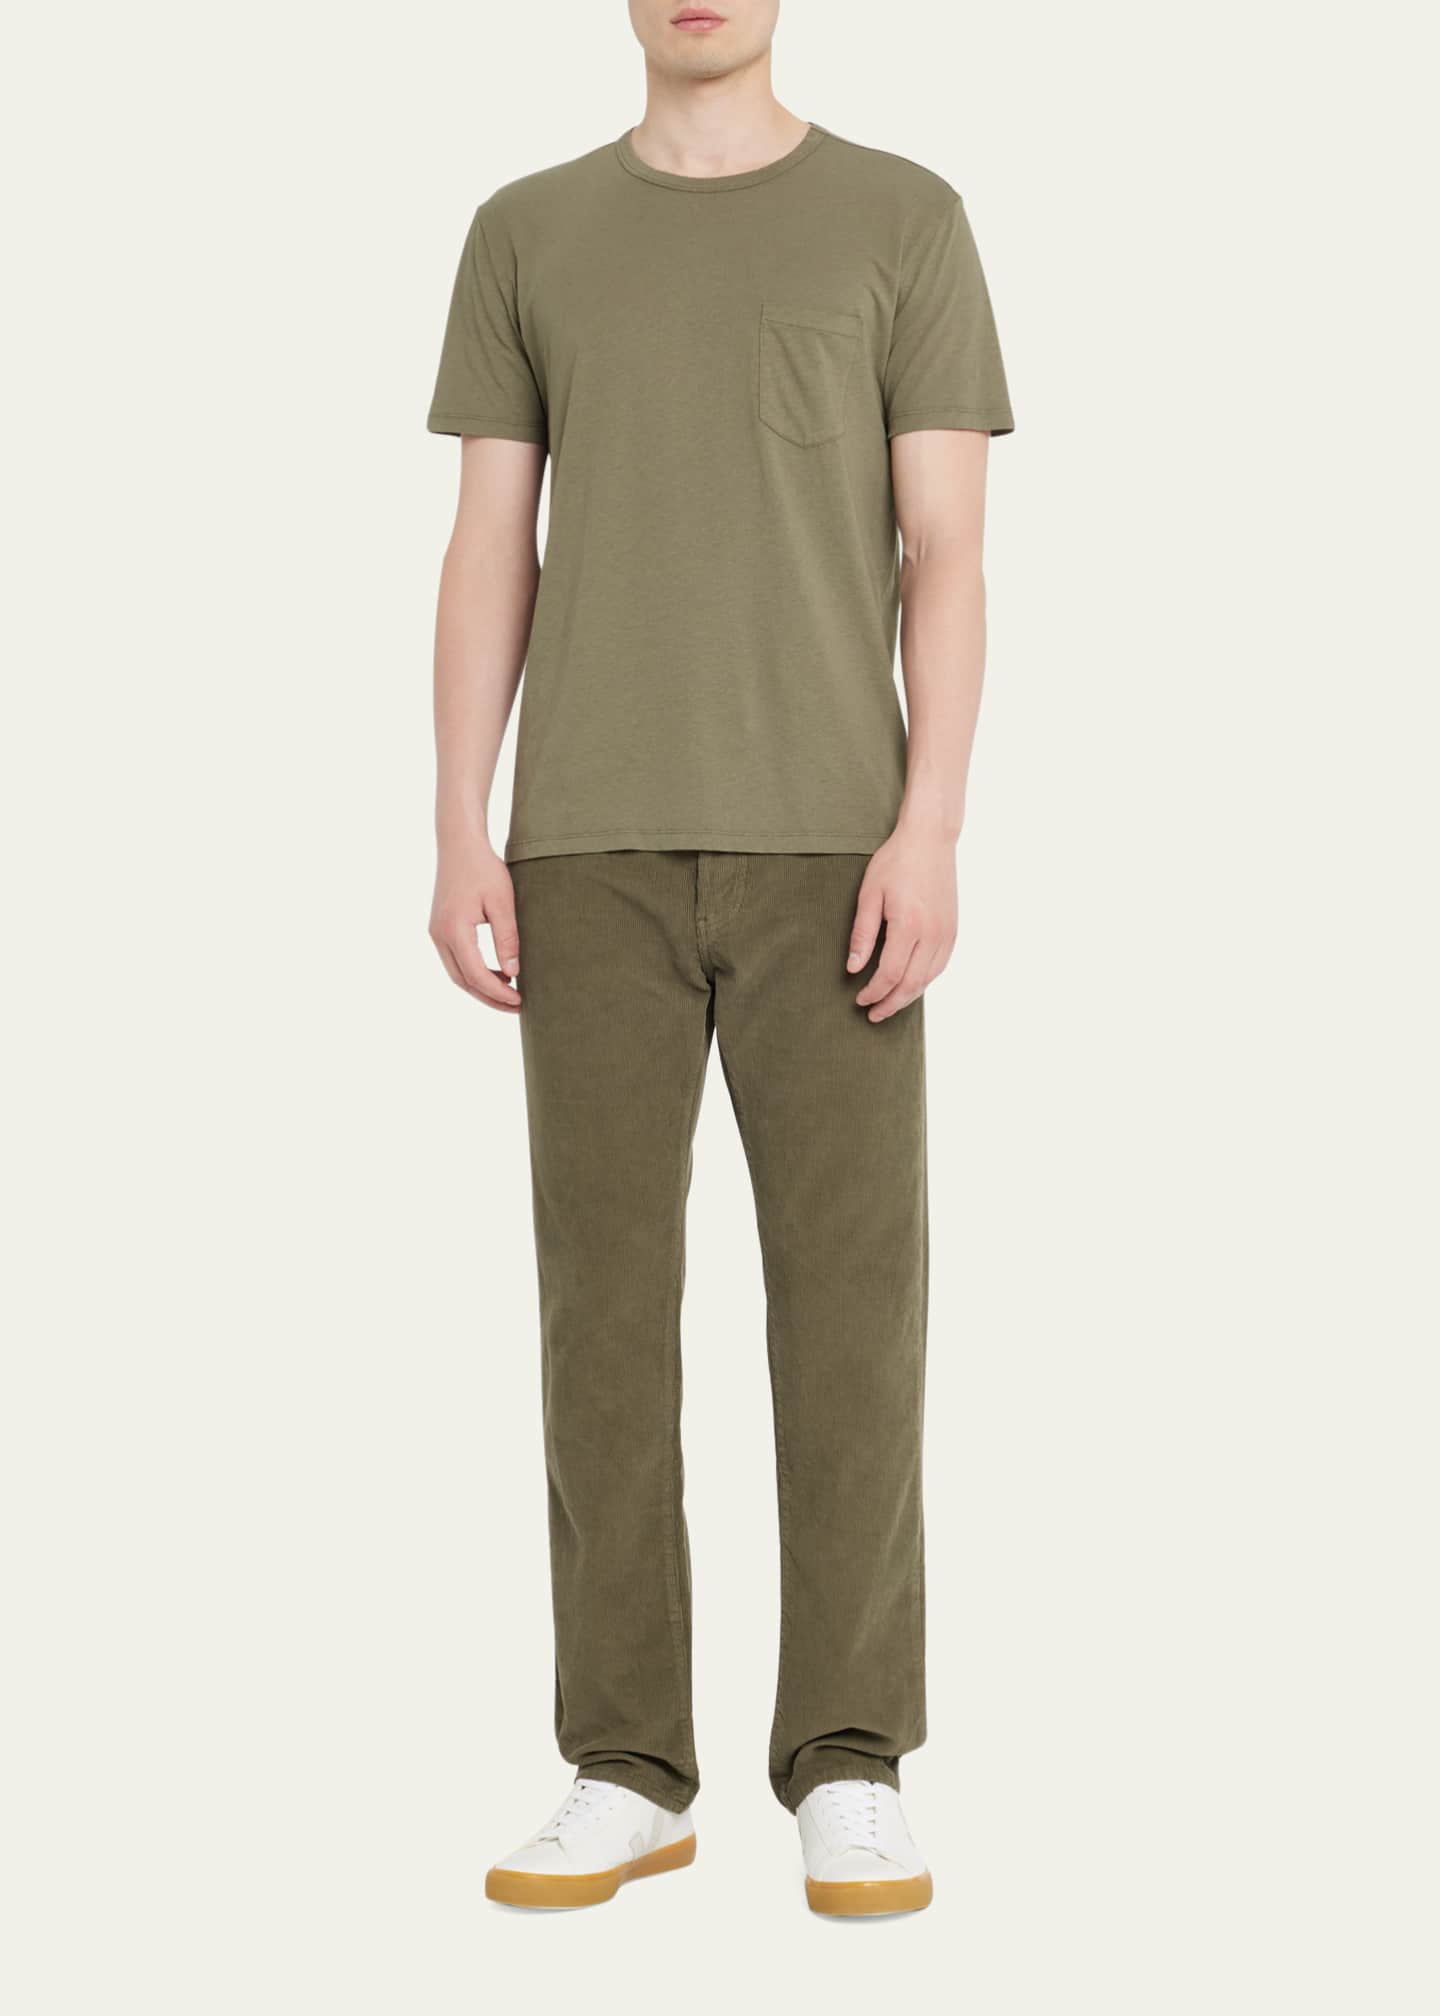 Officine Generale Men's Light Jersey Pocket T-Shirt - Bergdorf Goodman